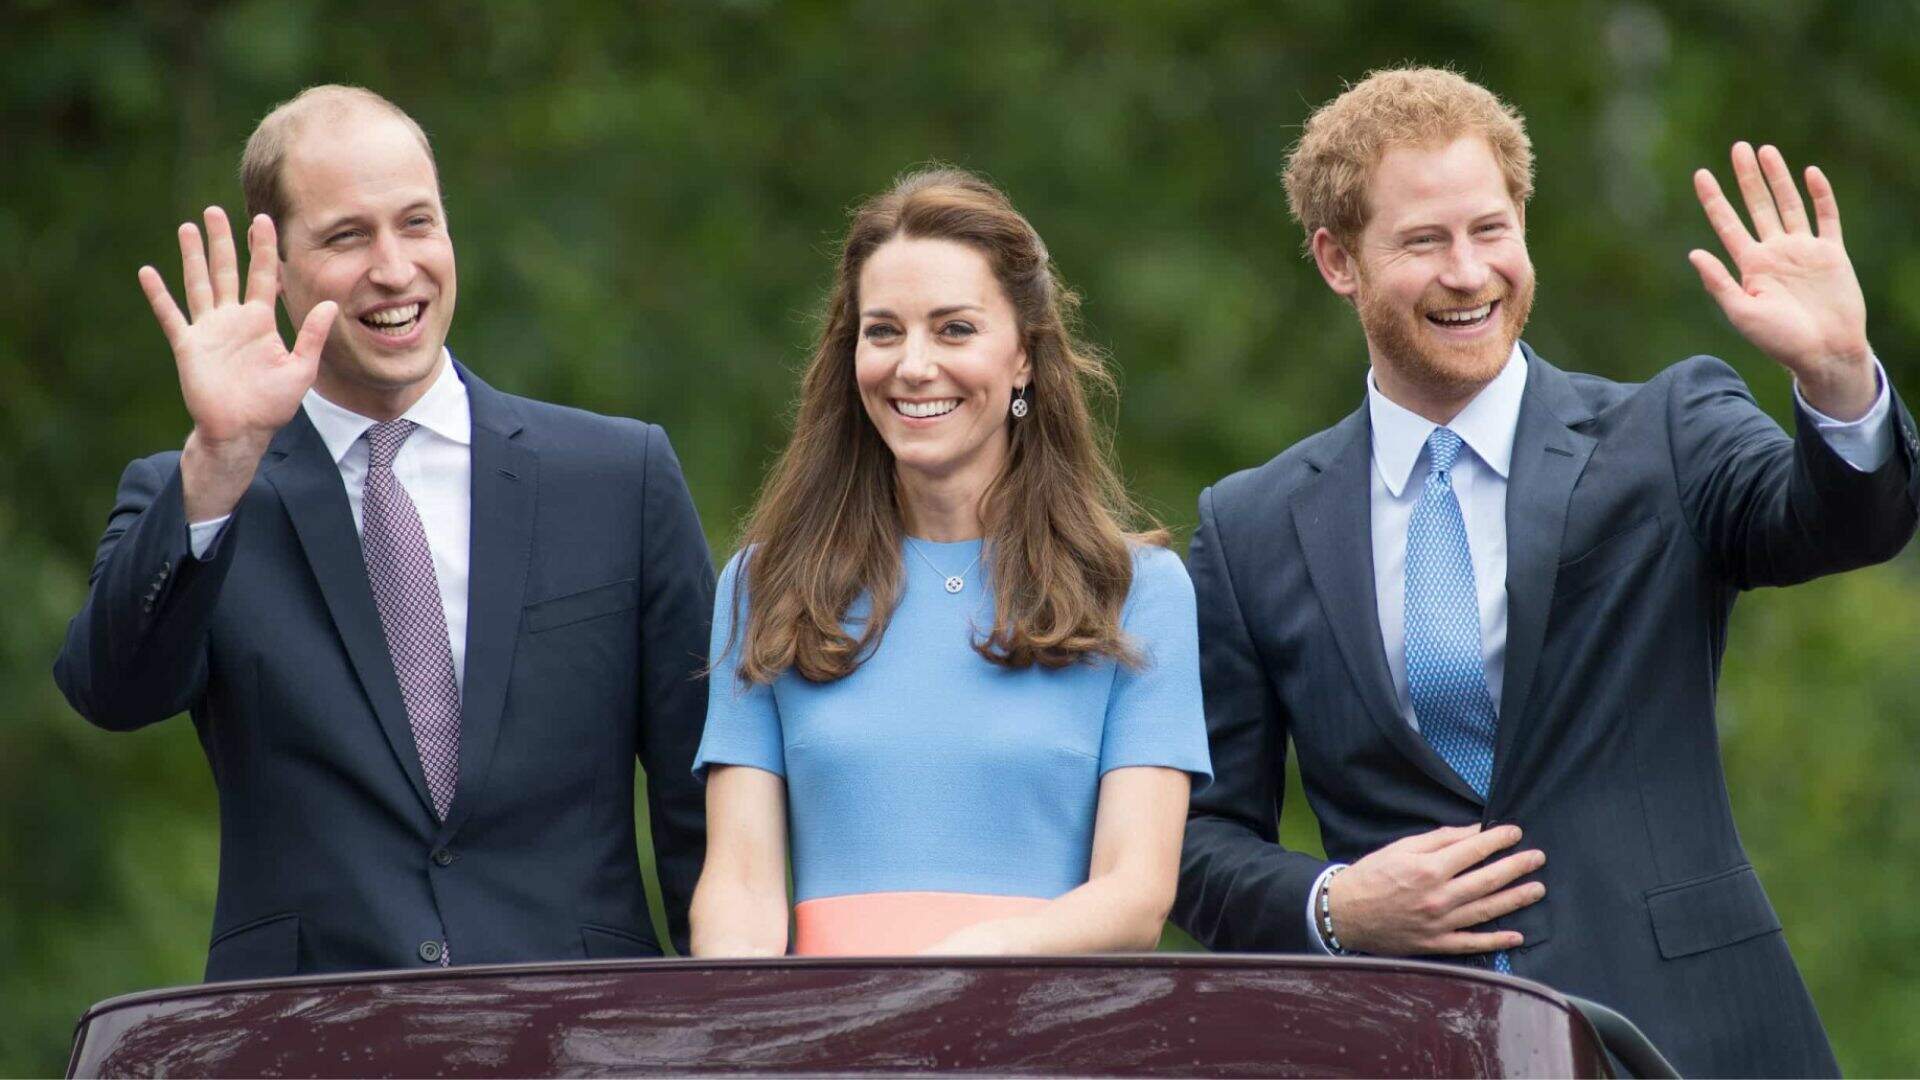 Príncipe Harry acusa William e Kate Middleton de incentivo para fantasia nazista em festa - Metropolitana FM